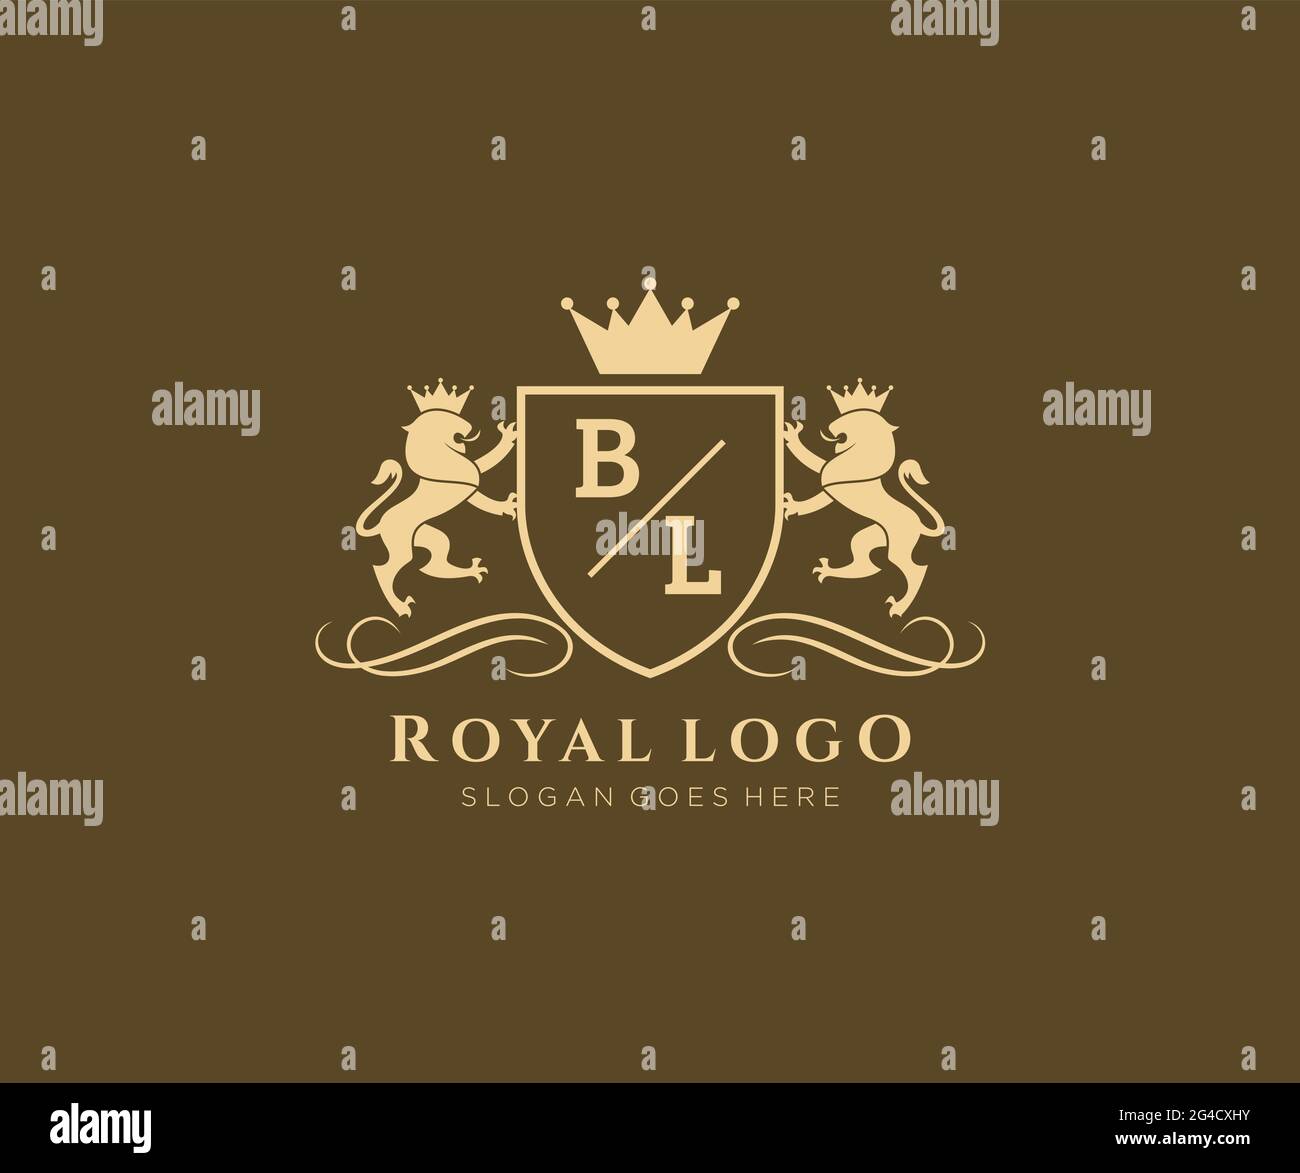 BL Buchstabe Lion Royal Luxury heraldic, Crest Logo Vorlage in Vektorgrafik für Restaurant, Royalty, Boutique, Cafe, Hotel, Heraldik, Schmuck, Mode und Stock Vektor